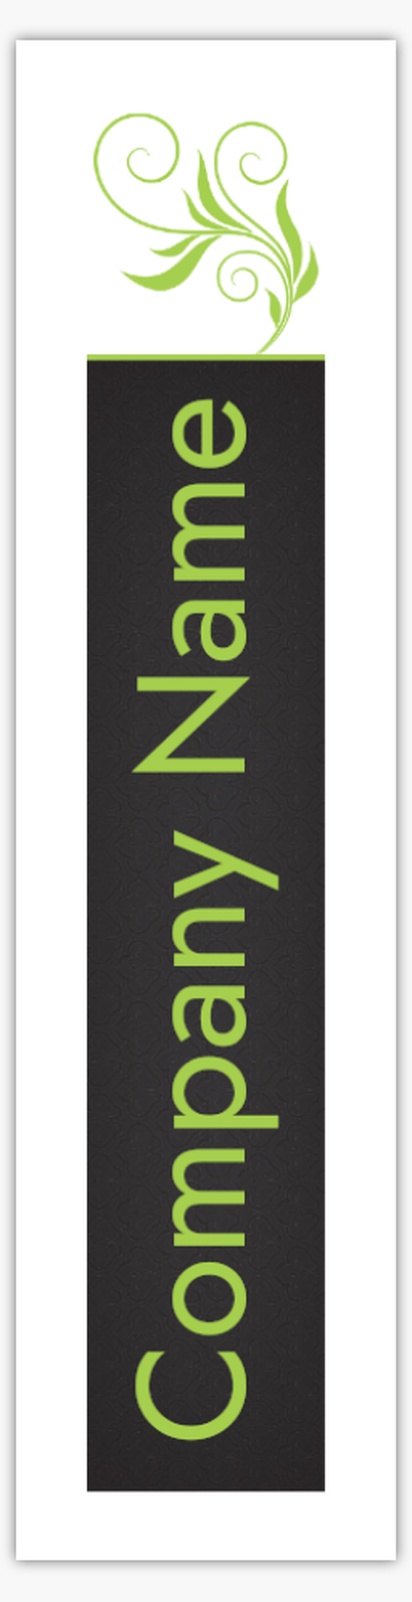 A foil whimsical business cards black green design for Elegant